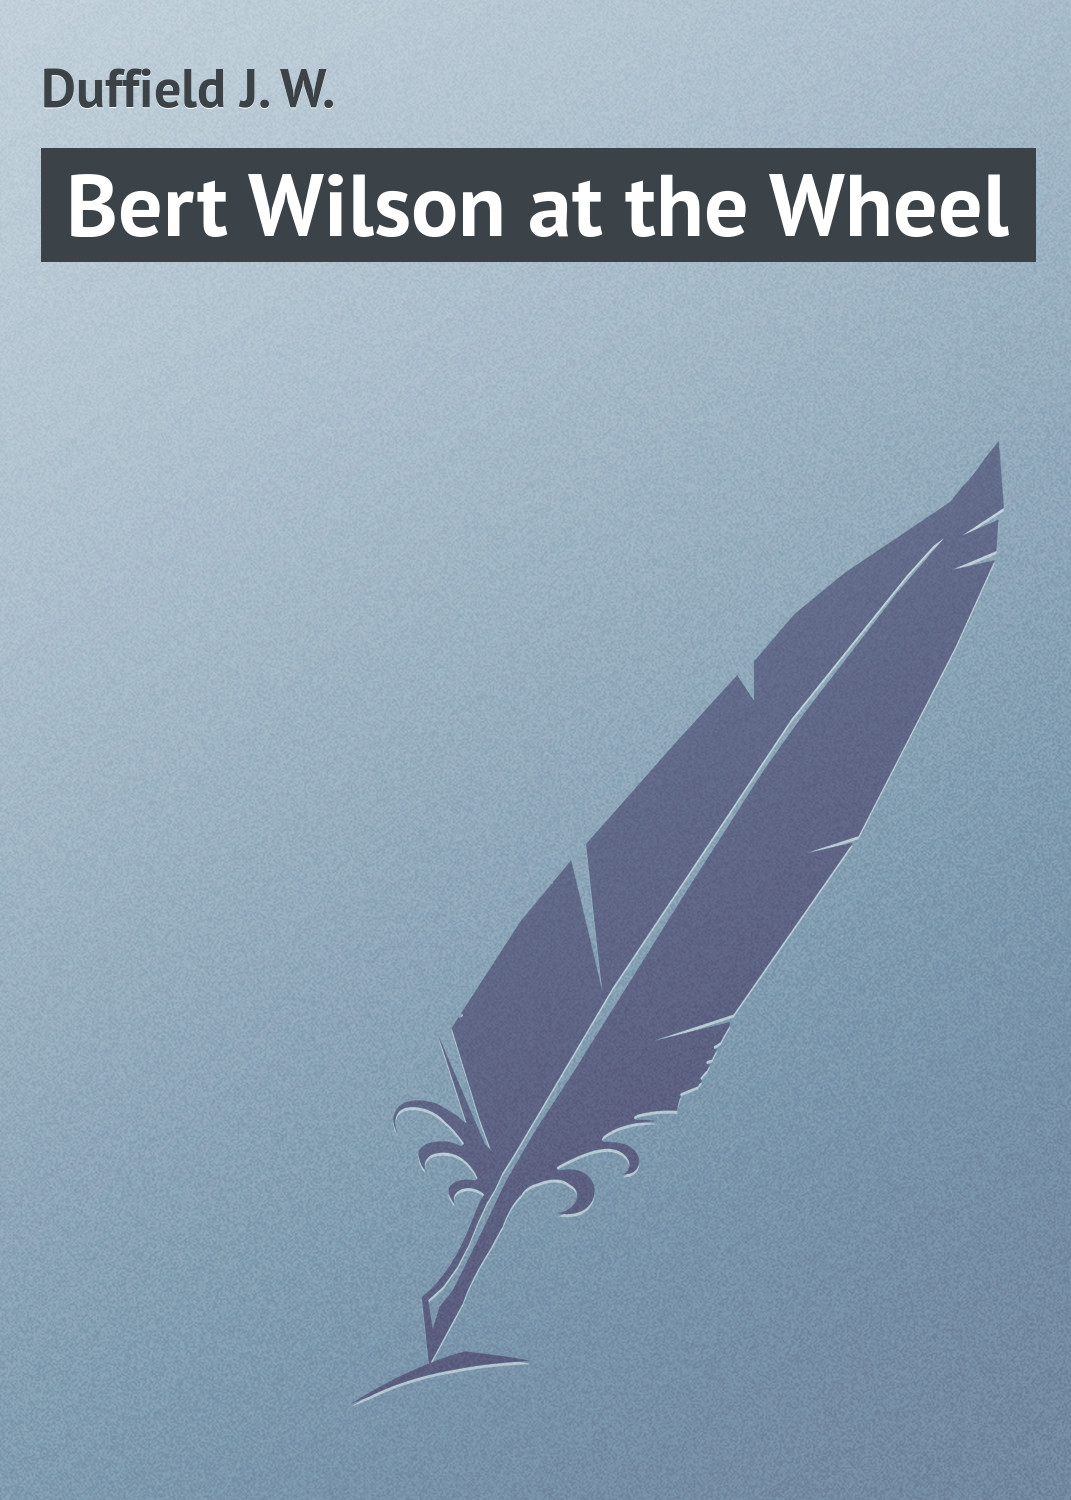 Книга Bert Wilson at the Wheel из серии , созданная J. Duffield, может относится к жанру Зарубежная классика, Зарубежные детские книги. Стоимость электронной книги Bert Wilson at the Wheel с идентификатором 23164867 составляет 5.99 руб.